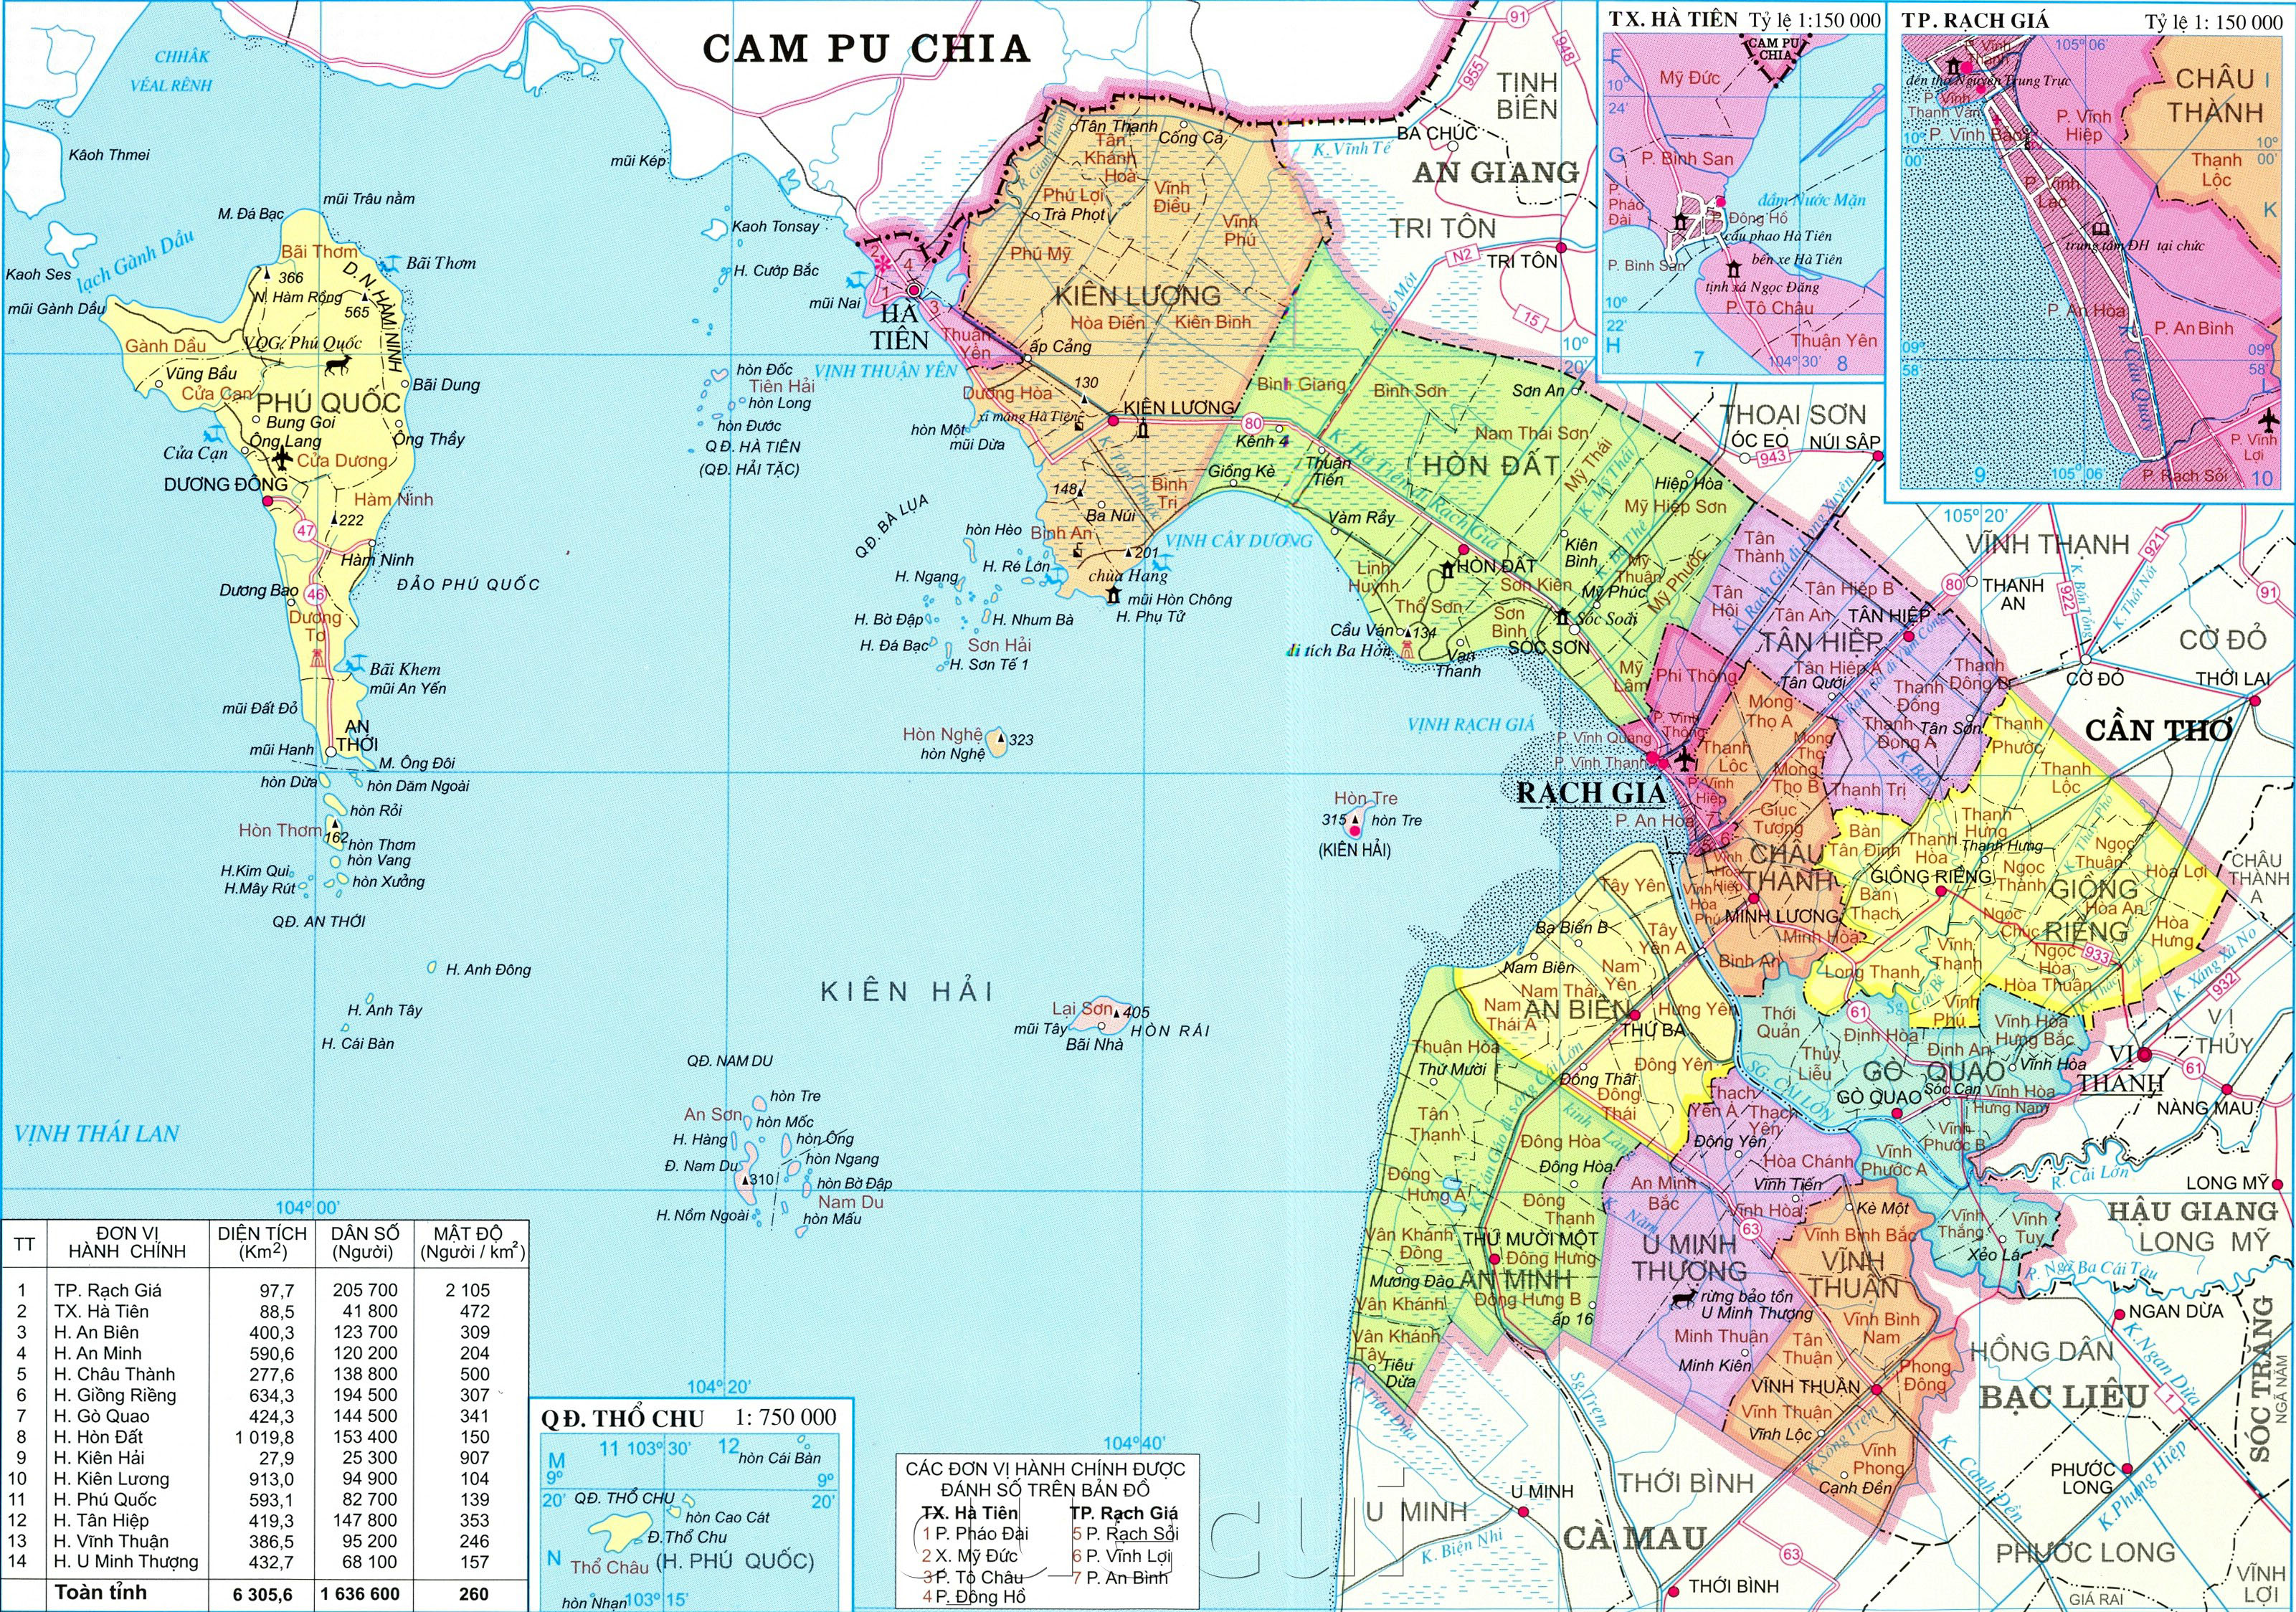 Khám phá bản đồ hành chính tỉnh Kiên Giang năm 2024 để trải nghiệm sự phát triển đầy hứa hẹn của vùng đất này. Những thông tin được cập nhật sẽ giúp bạn hiểu rõ hơn về tất cả các xã, thị trấn và thành phố trên địa bàn Kiên Giang.